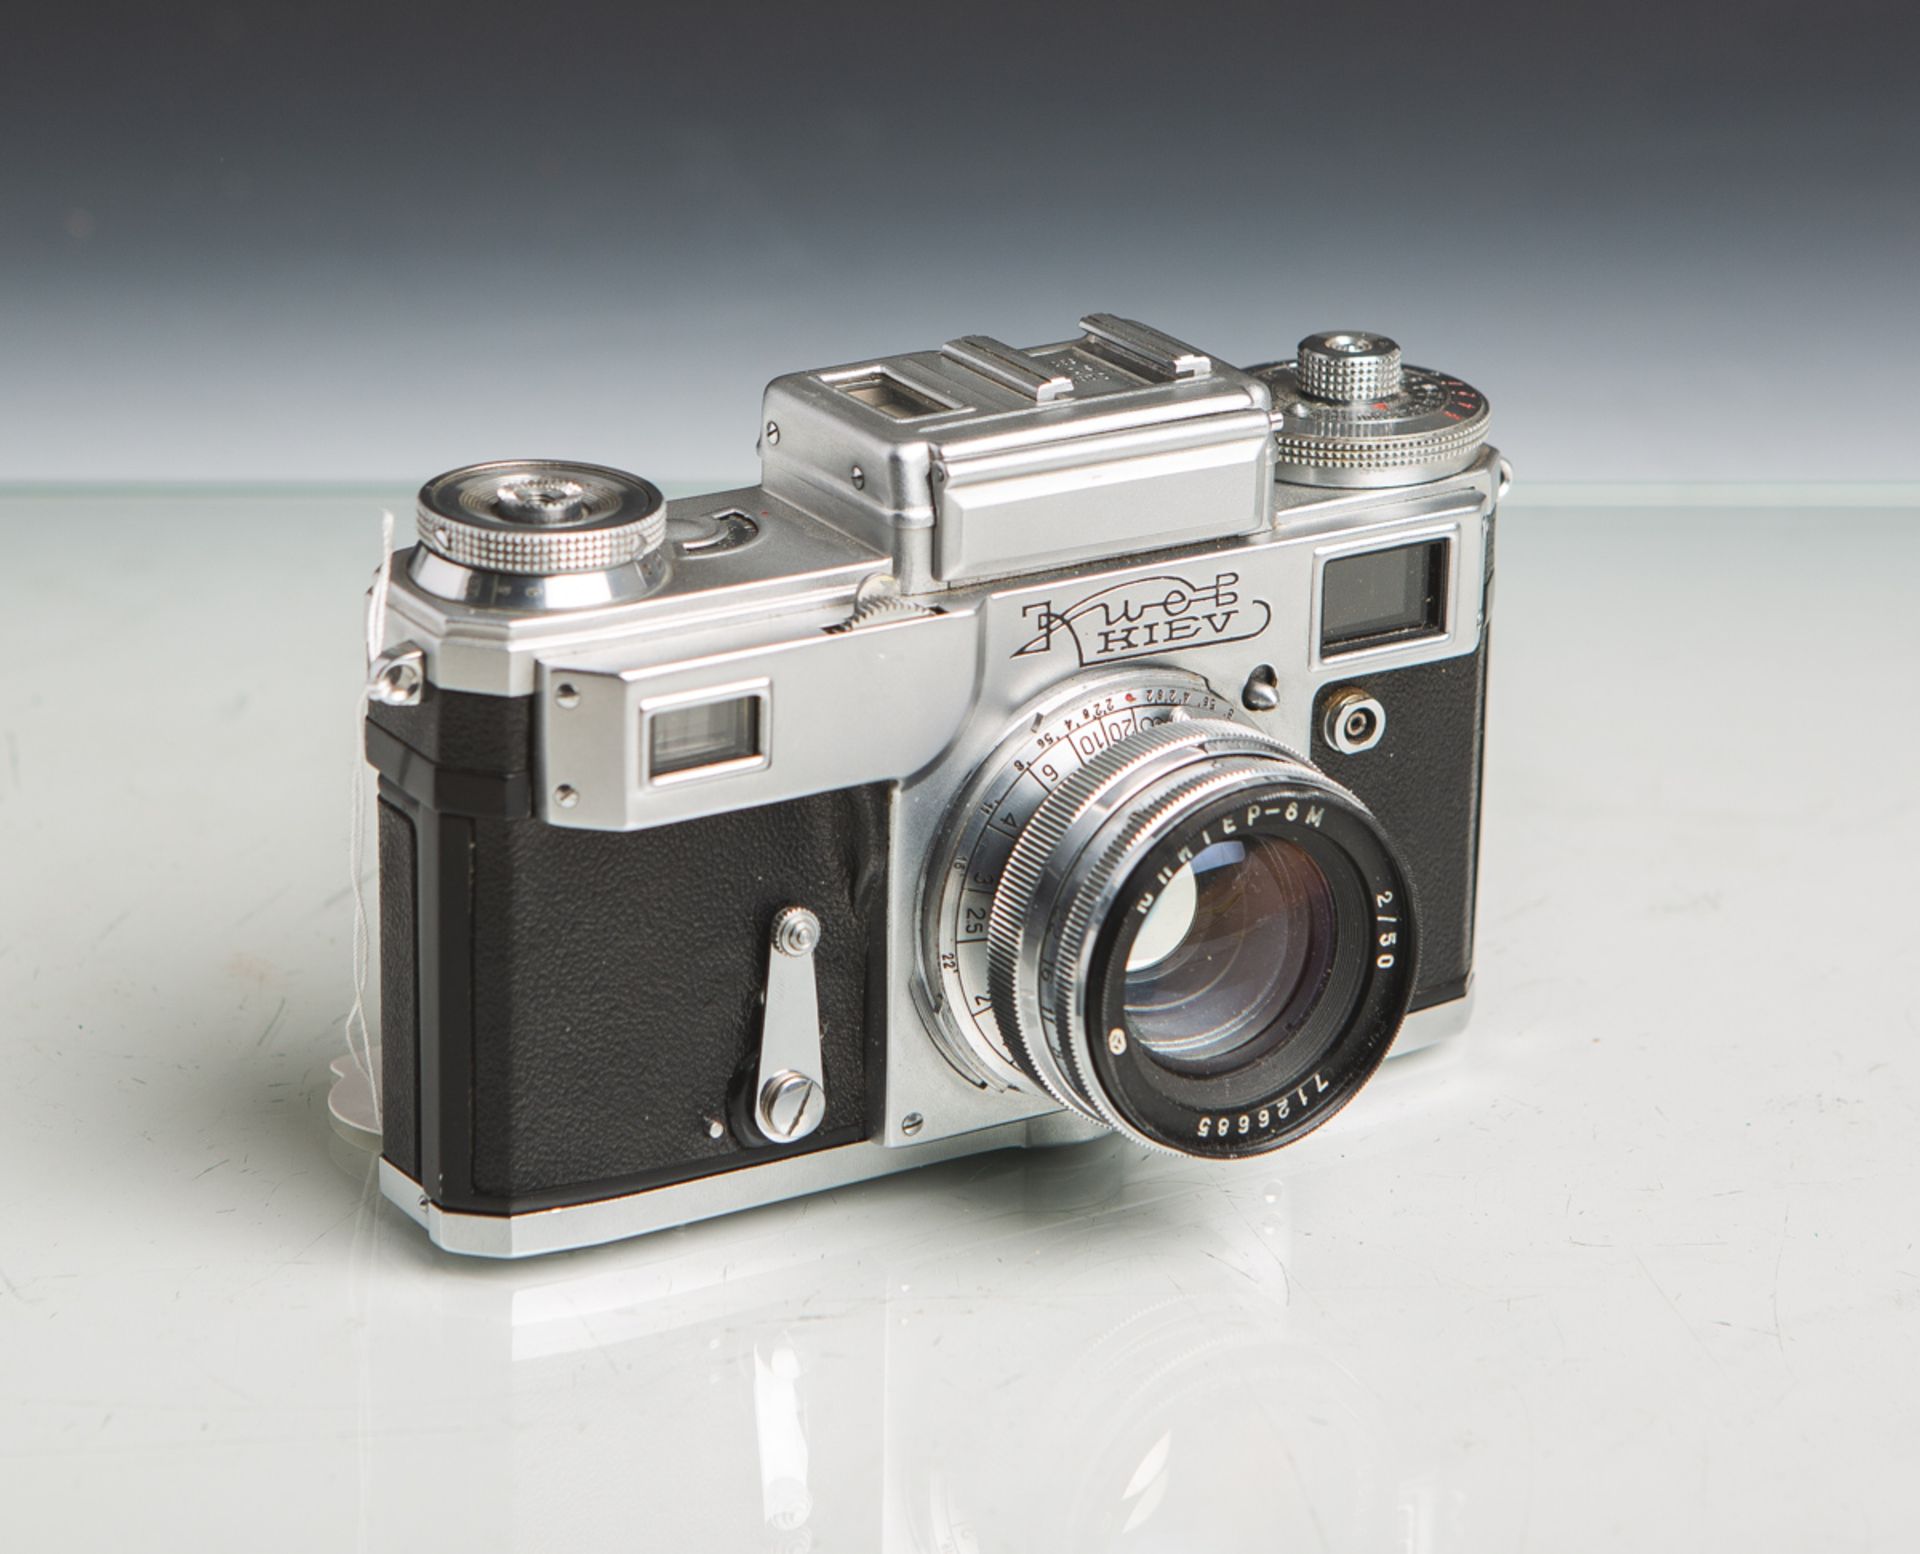 Kamera "Kiev 4" (Made in USSR, Contax, Baujahr 1957 - 1974), Objektiv "Jupiter-8M", 2/50,